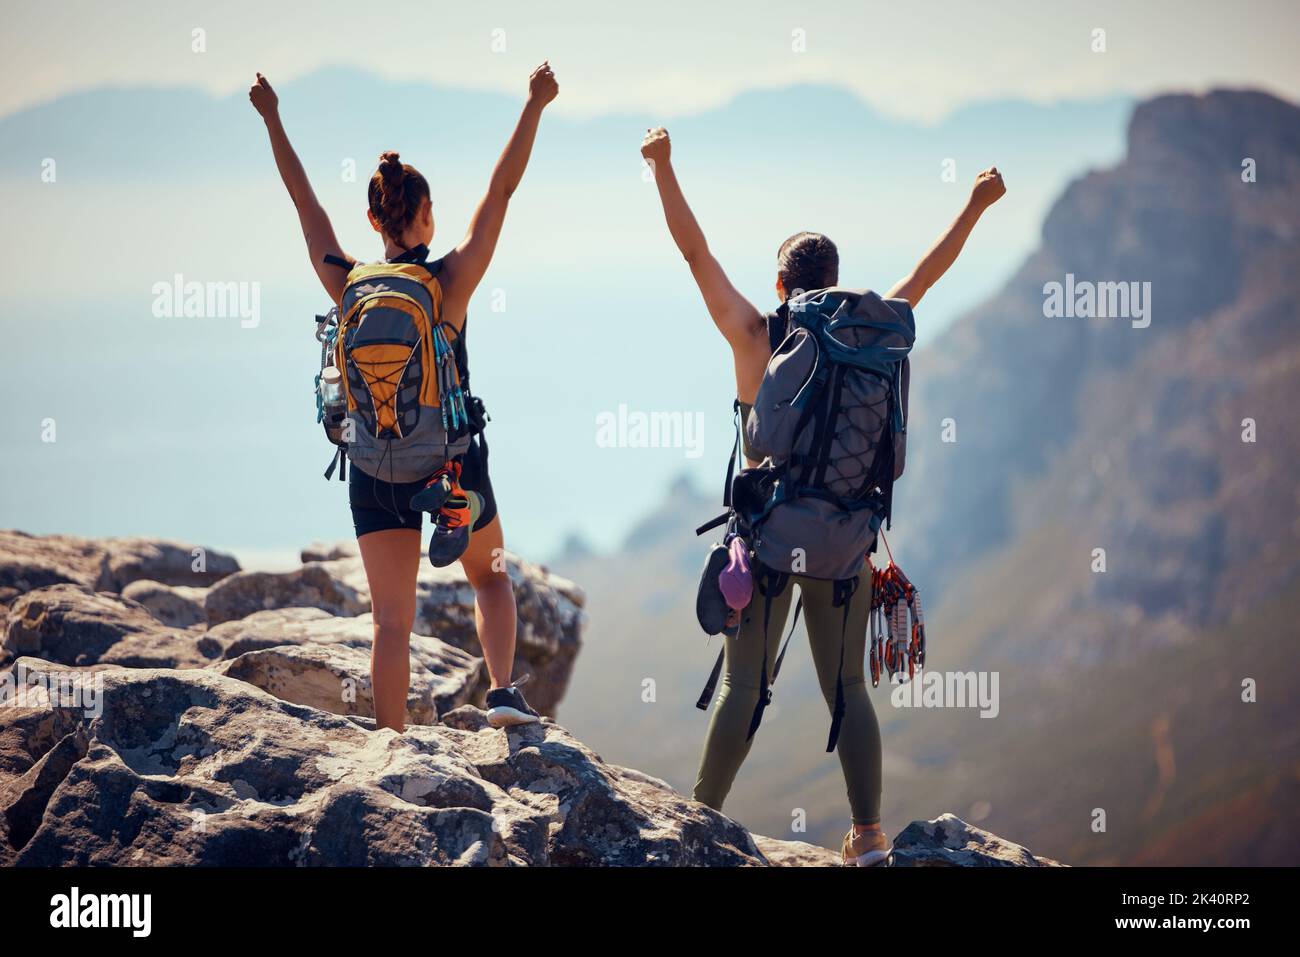 Les femmes de randonnée, de montagne et de sac à dos célèbrent le succès, la motivation et la réussite de l'escalade de falaise ou de trekking. Les gens, la liberté et la victoire Banque D'Images